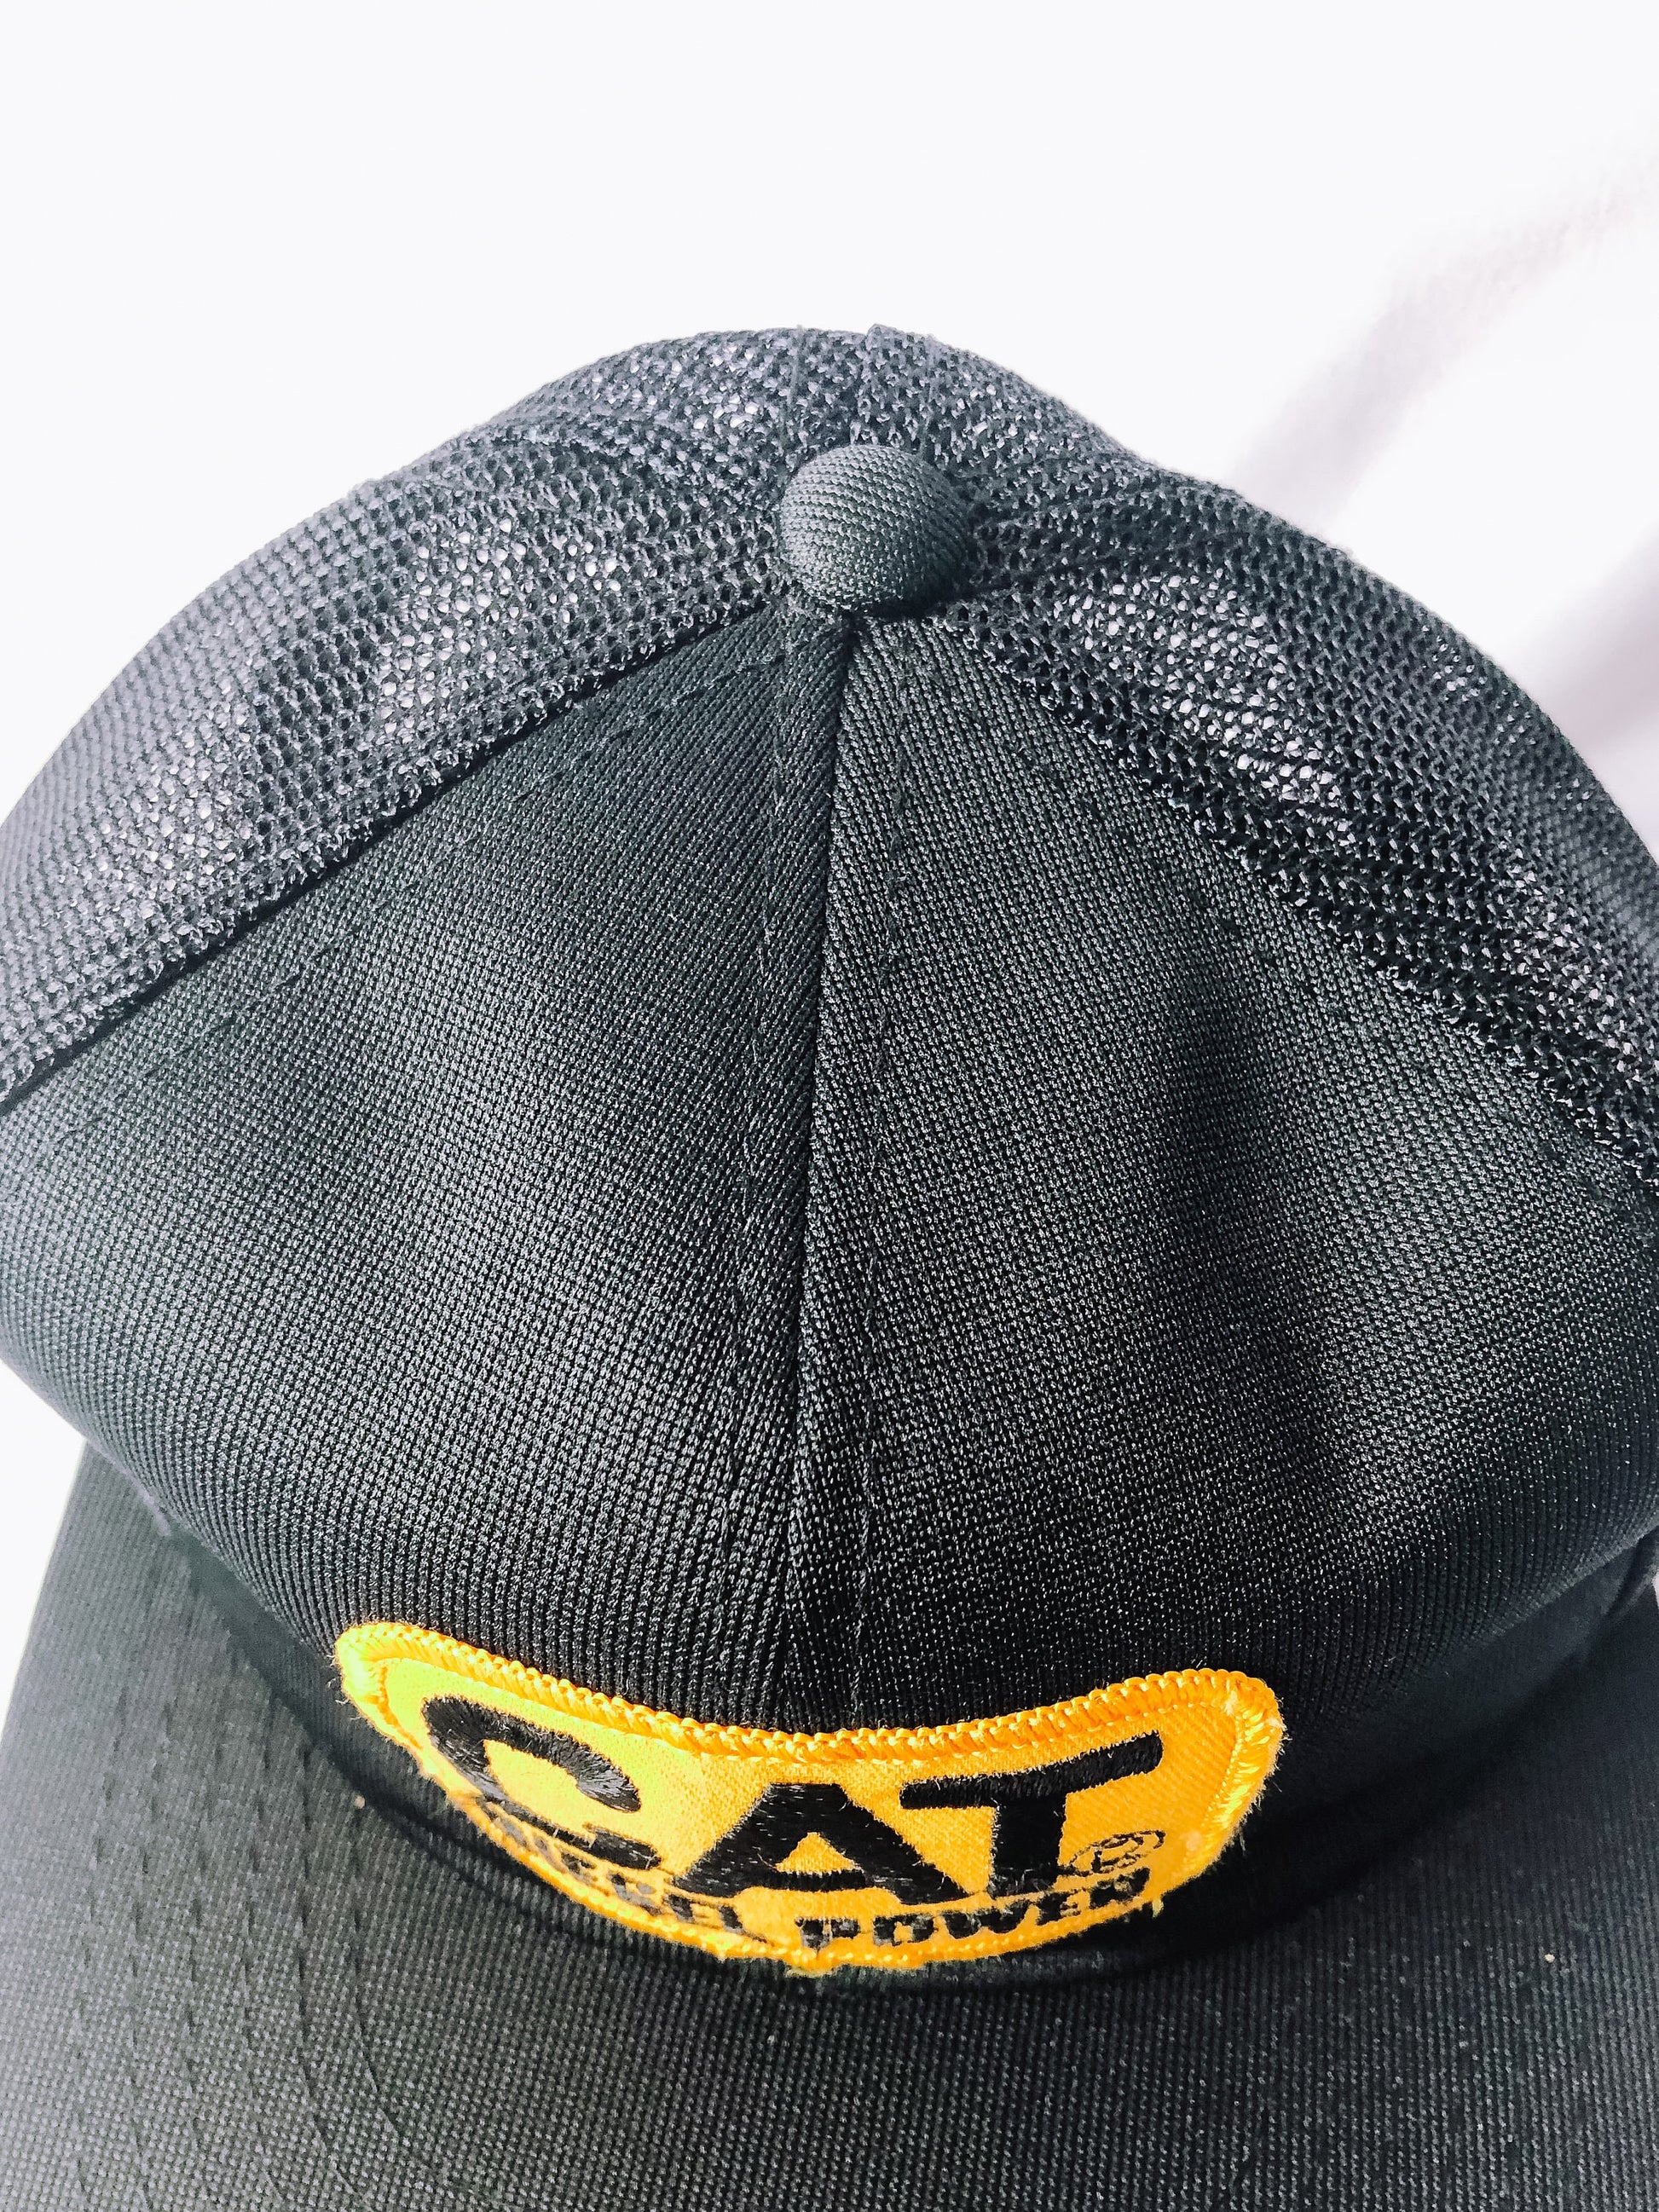 Vintage CAT Diesel Power Black Mesh Trucker Hat, Flat Brim Snapback Cap